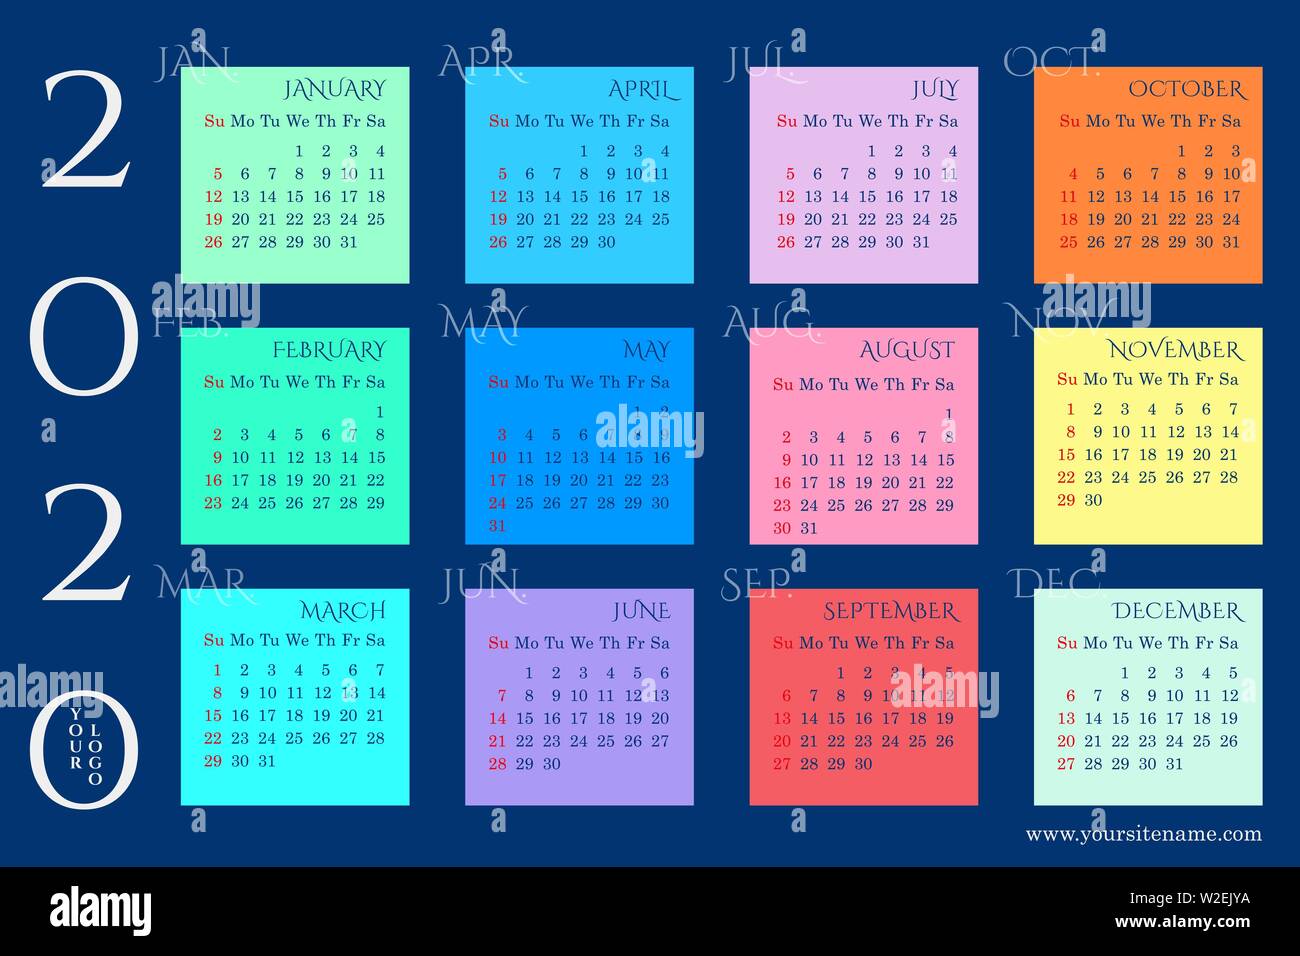 Calendrier mural arc-en-ciel de 2020 avec des blocs de mois sur un fond bleu foncé. Dimanche en rouge. Modèle vectoriel Illustration de Vecteur